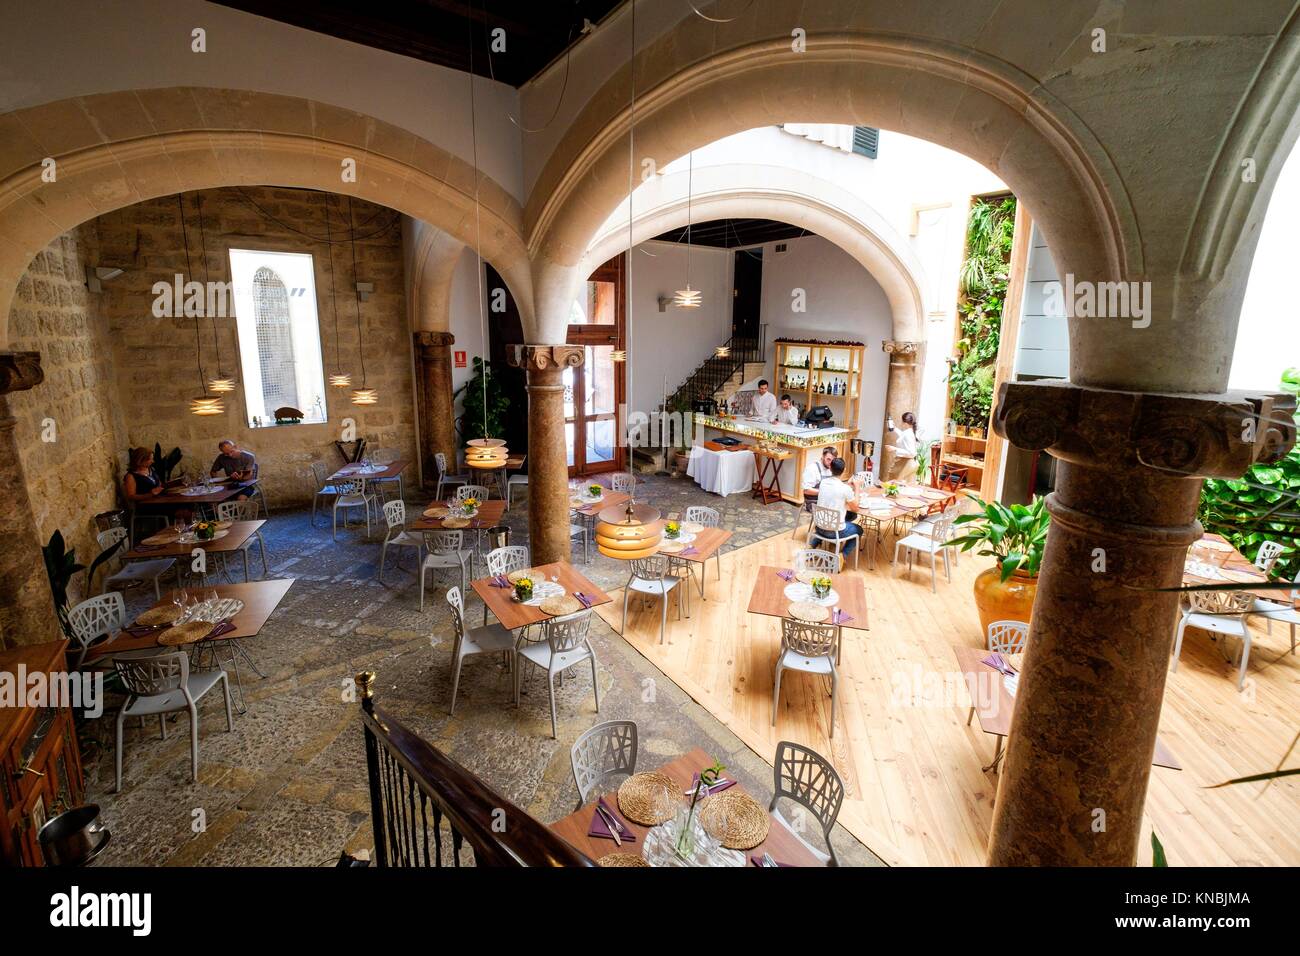 restaurante cafe Aromata, Centre de Cultura ""SA NOSTRA"", Palma, Mallorca,  balearic islands, spain, europe Stock Photo - Alamy